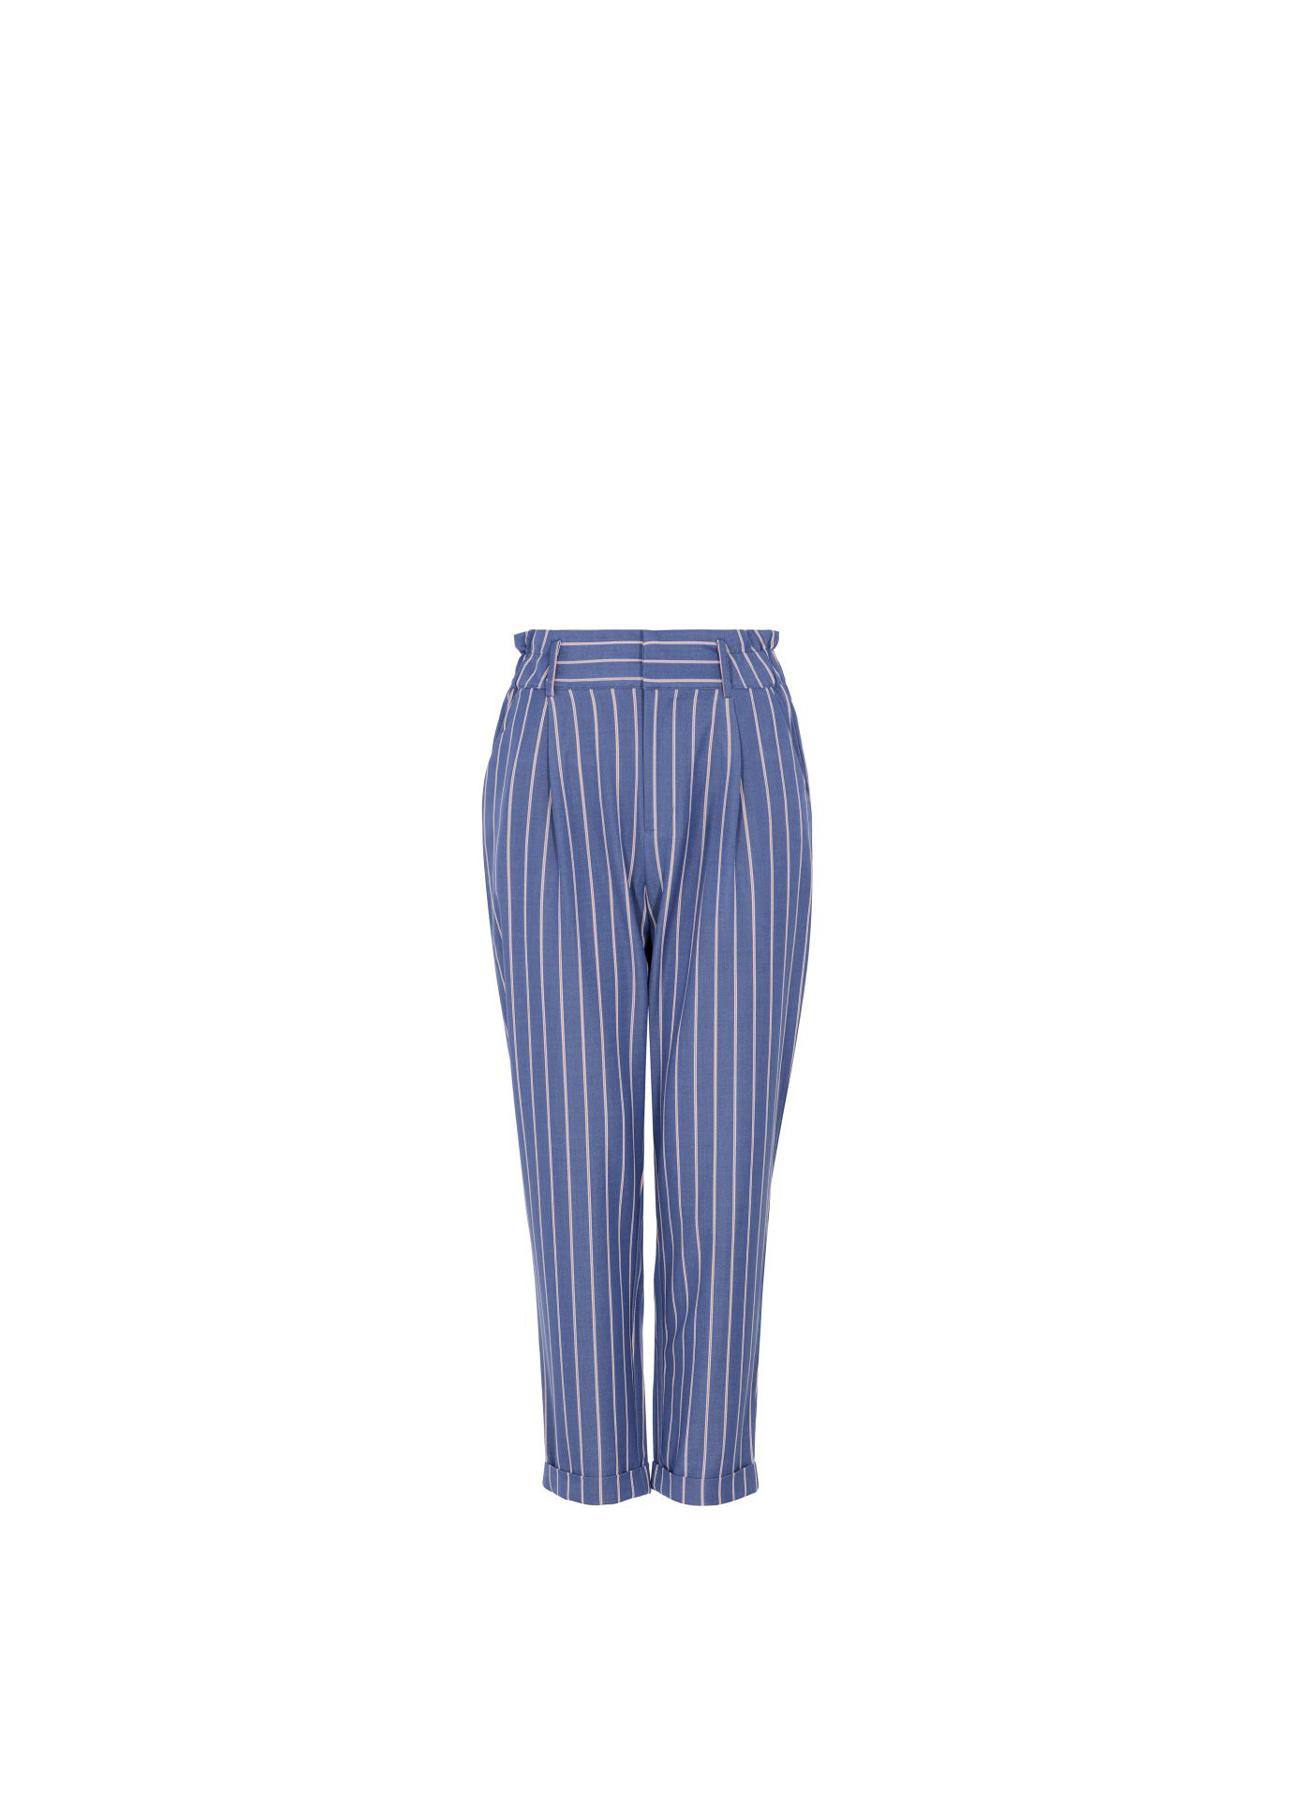 Niebieskie spodnie w paski damskie  SPODT-0041-61(W20)